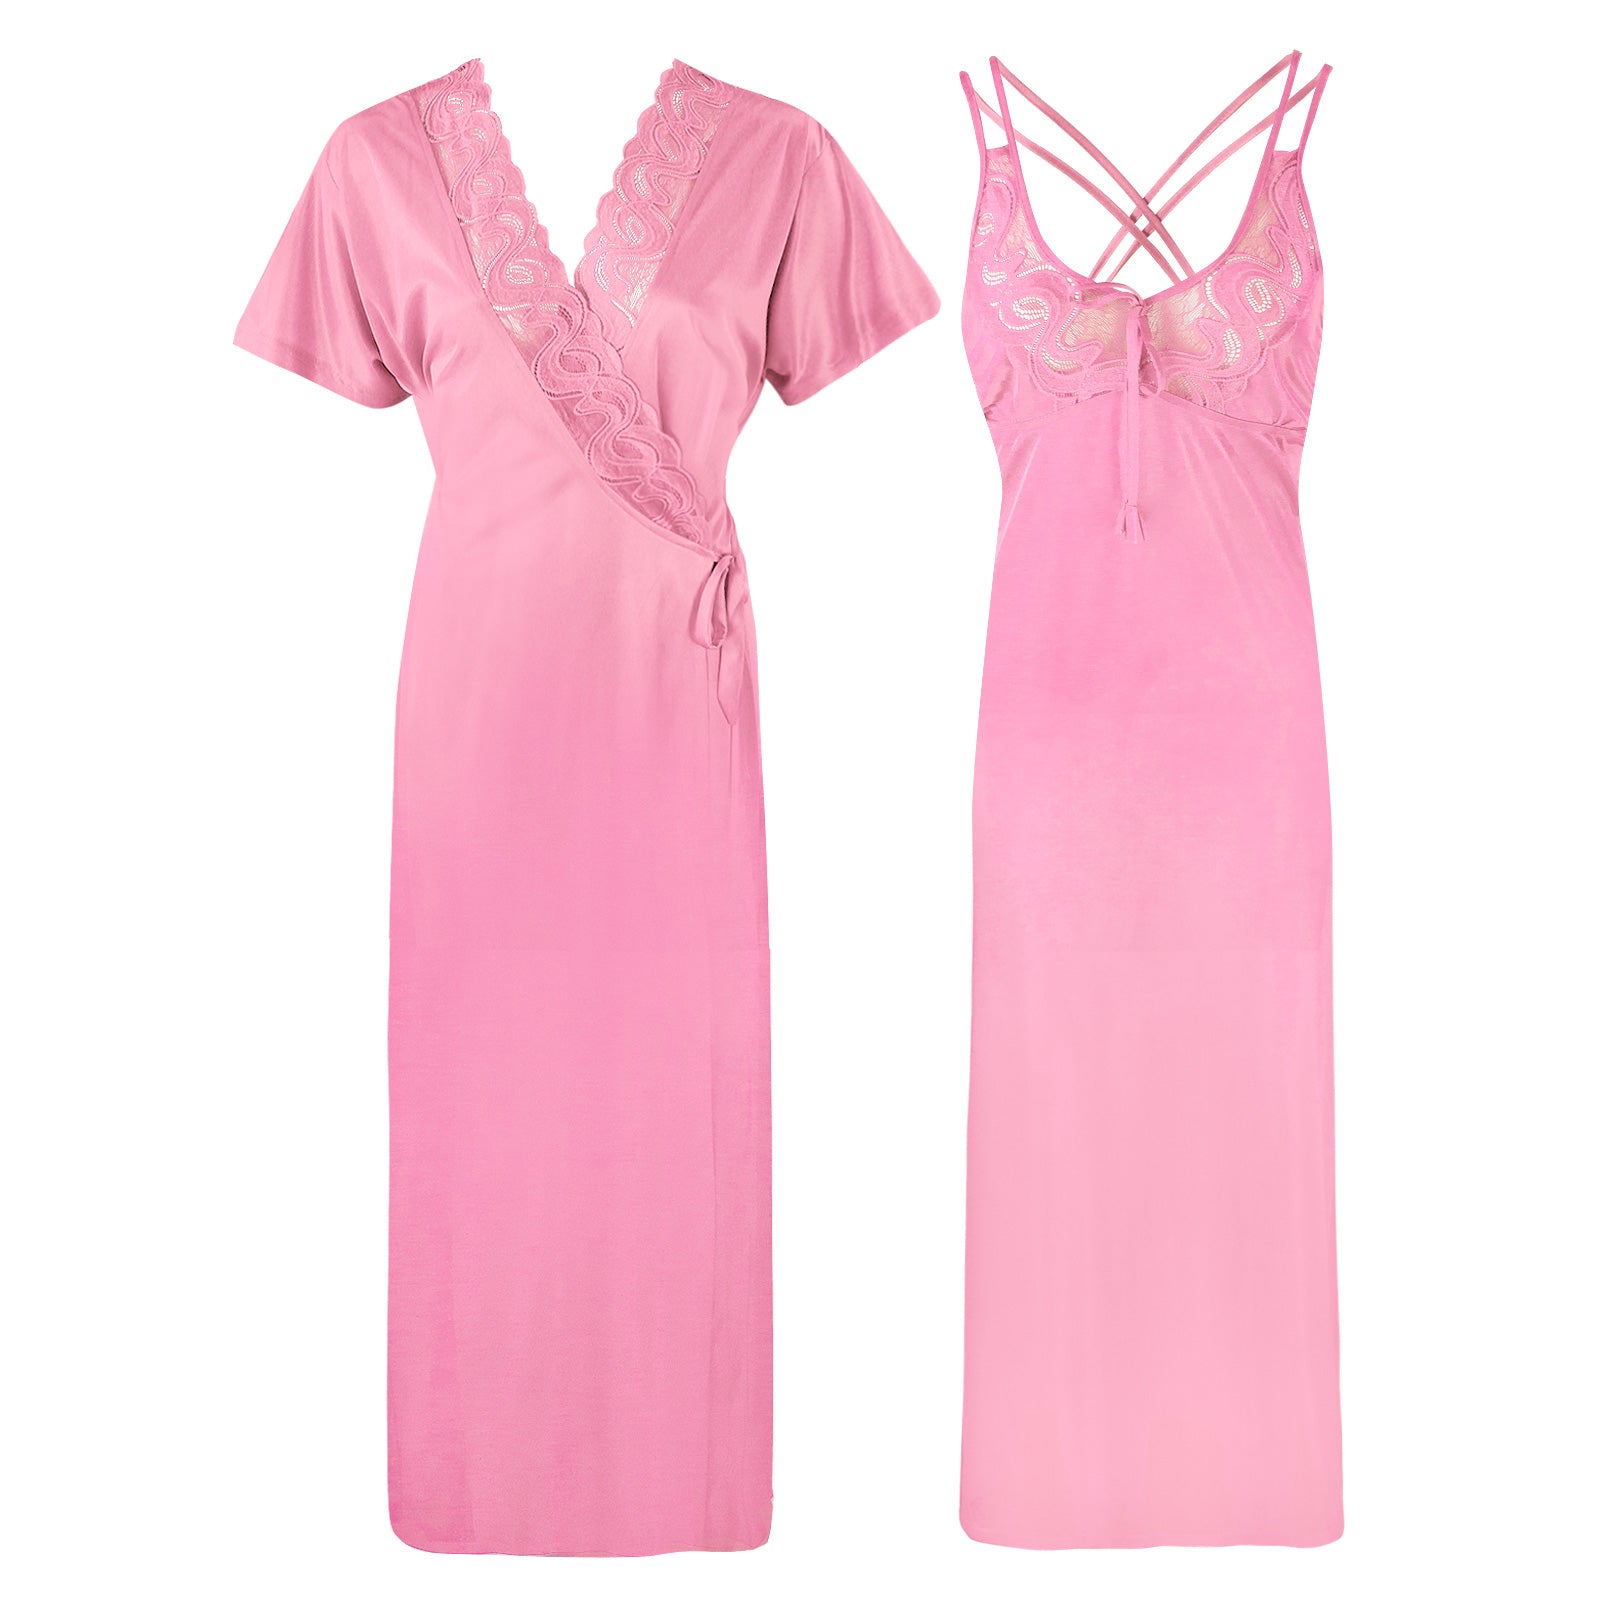 Pink / XXL (16-18) Womens Plus Size Nightdress 2 Pcs Set The Orange Tags